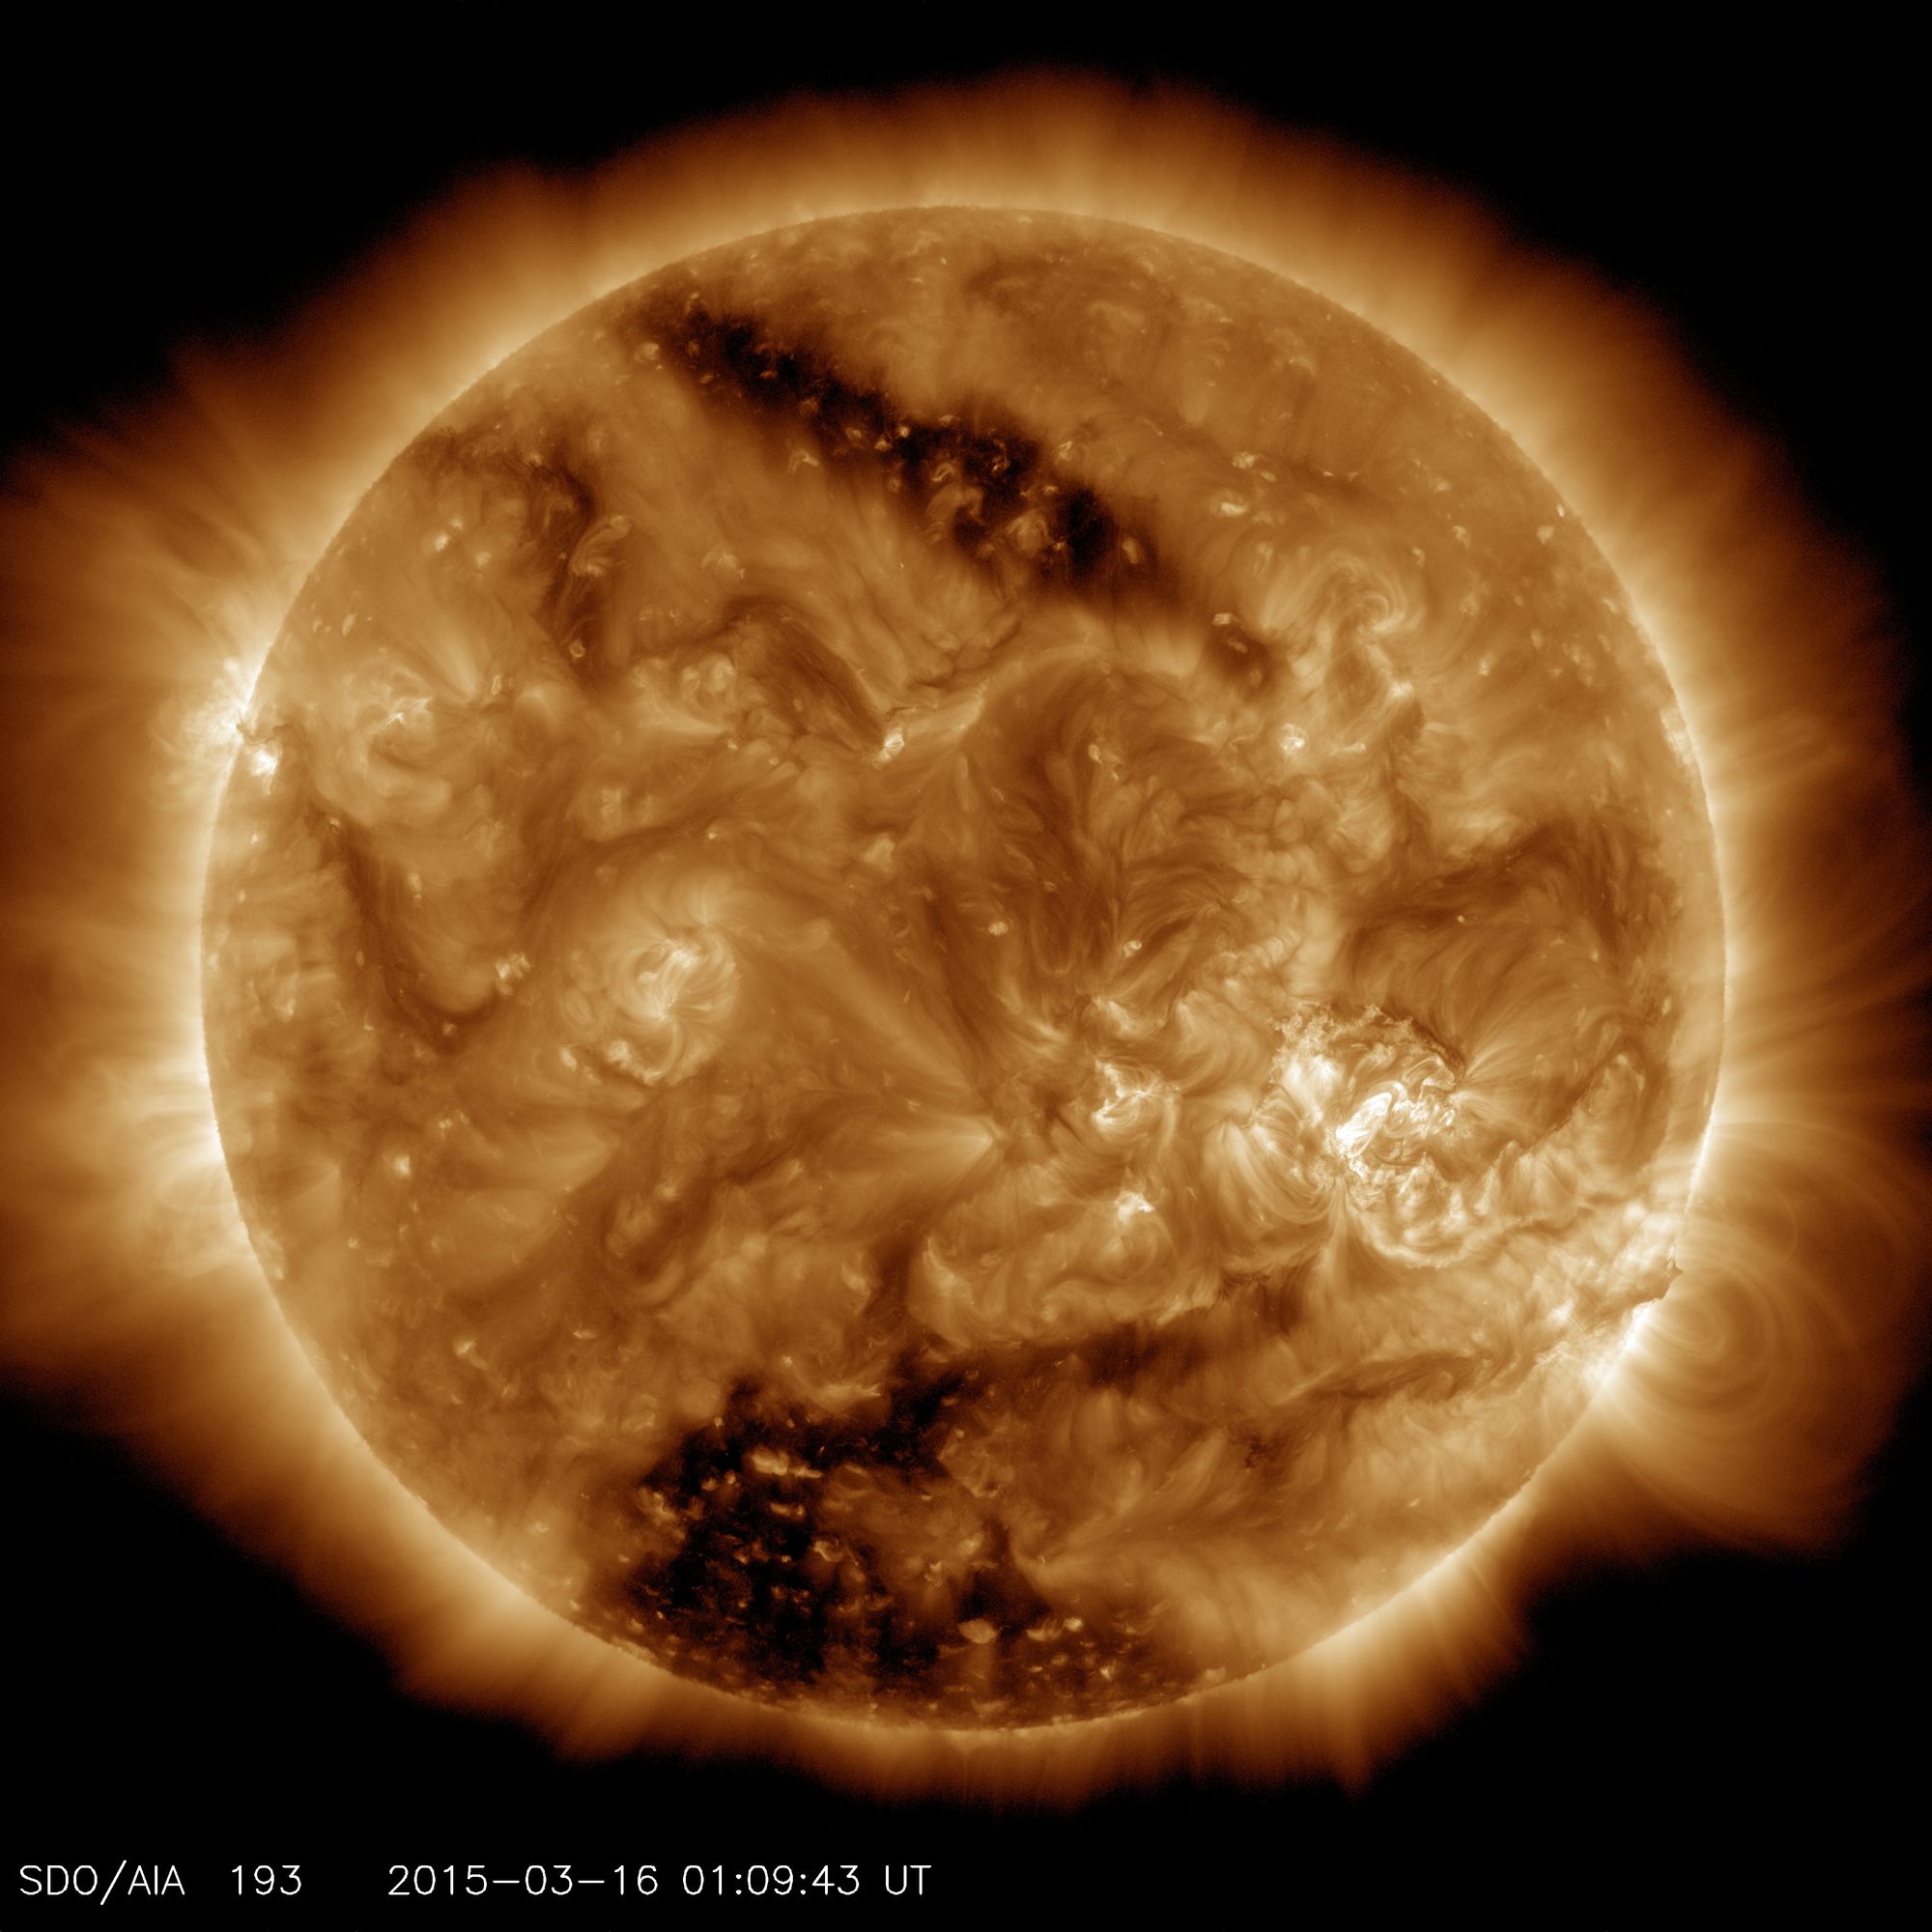 10 เรื่องเกี่ยวกับดวงอาทิตย์ที่นักวิทยาศาสตร์เรียนรู้จากยาน SDO ขององค์การนาซา